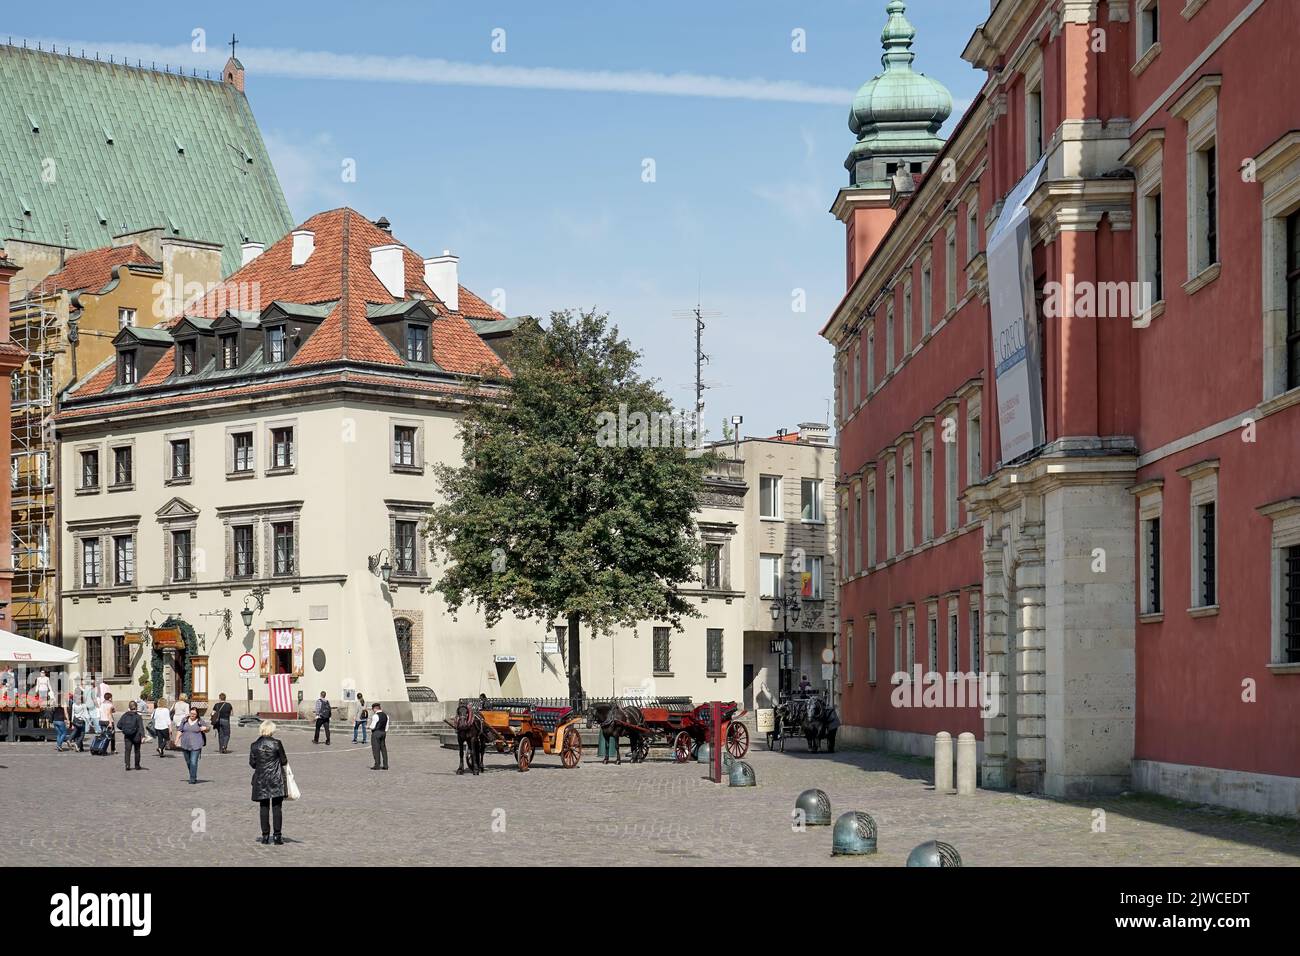 Varsavia, Polonia - 17 settembre 2014 : veduta della Piazza del mercato Vecchio a Varsavia il 17 settembre 2014. Persone non identificate Foto Stock